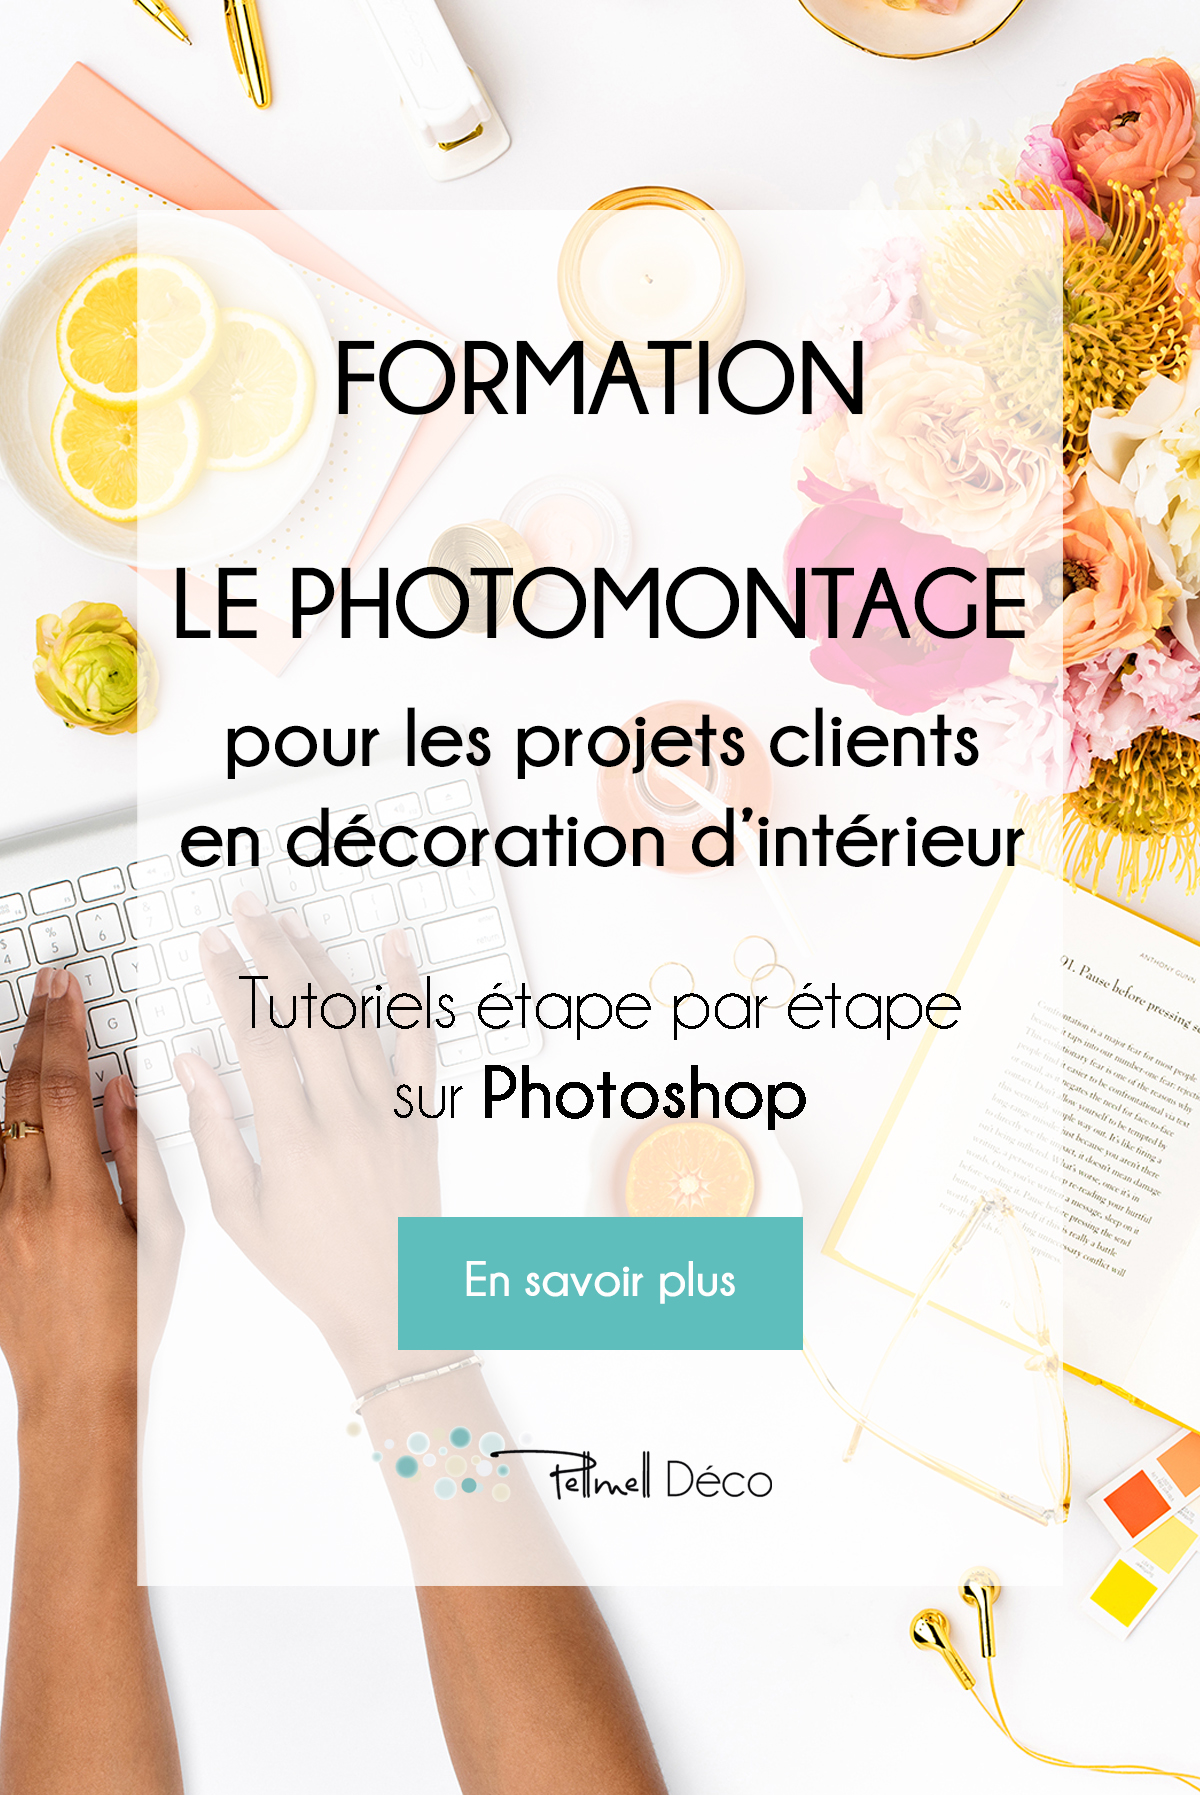 Formation Le photomontage sur Photoshop pour les projets clients en décoration d'intérieur